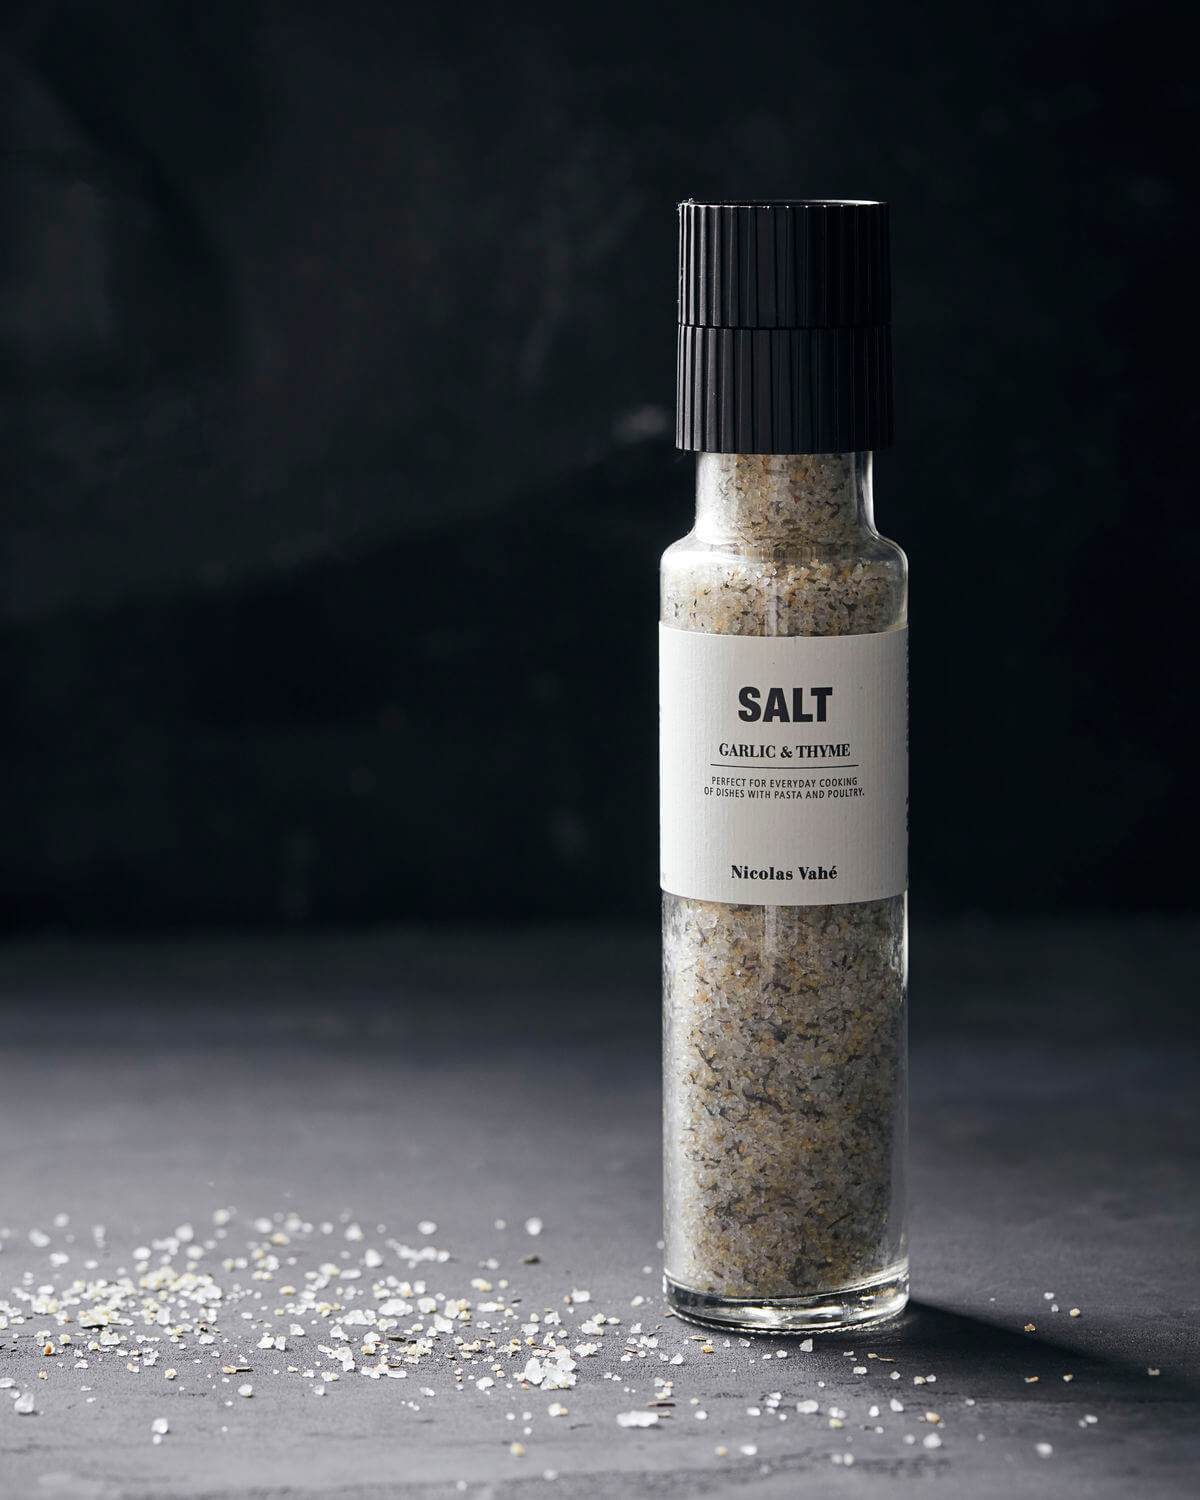 Salt - Hvítlaukur & Timjan